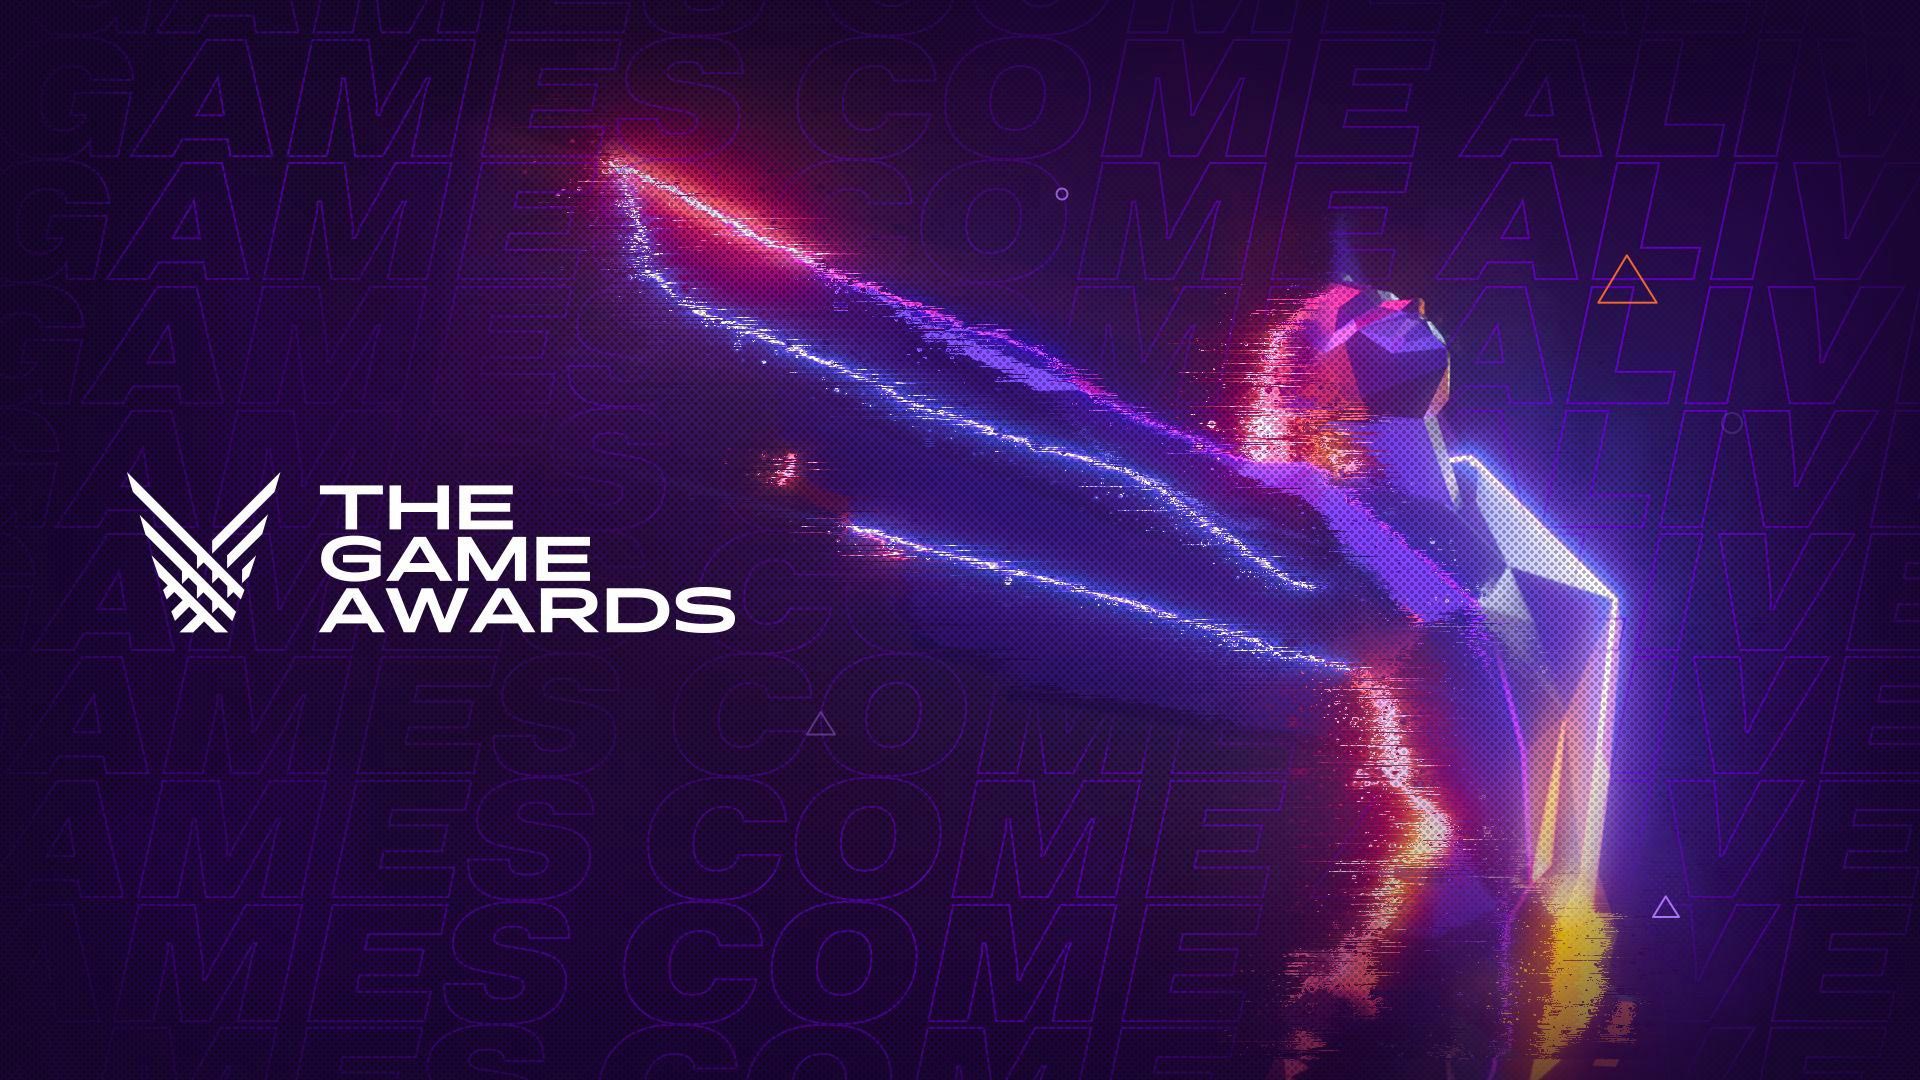 بازی های برگزیده مراسم The Game Awards در سال 2020 مشخص شدند